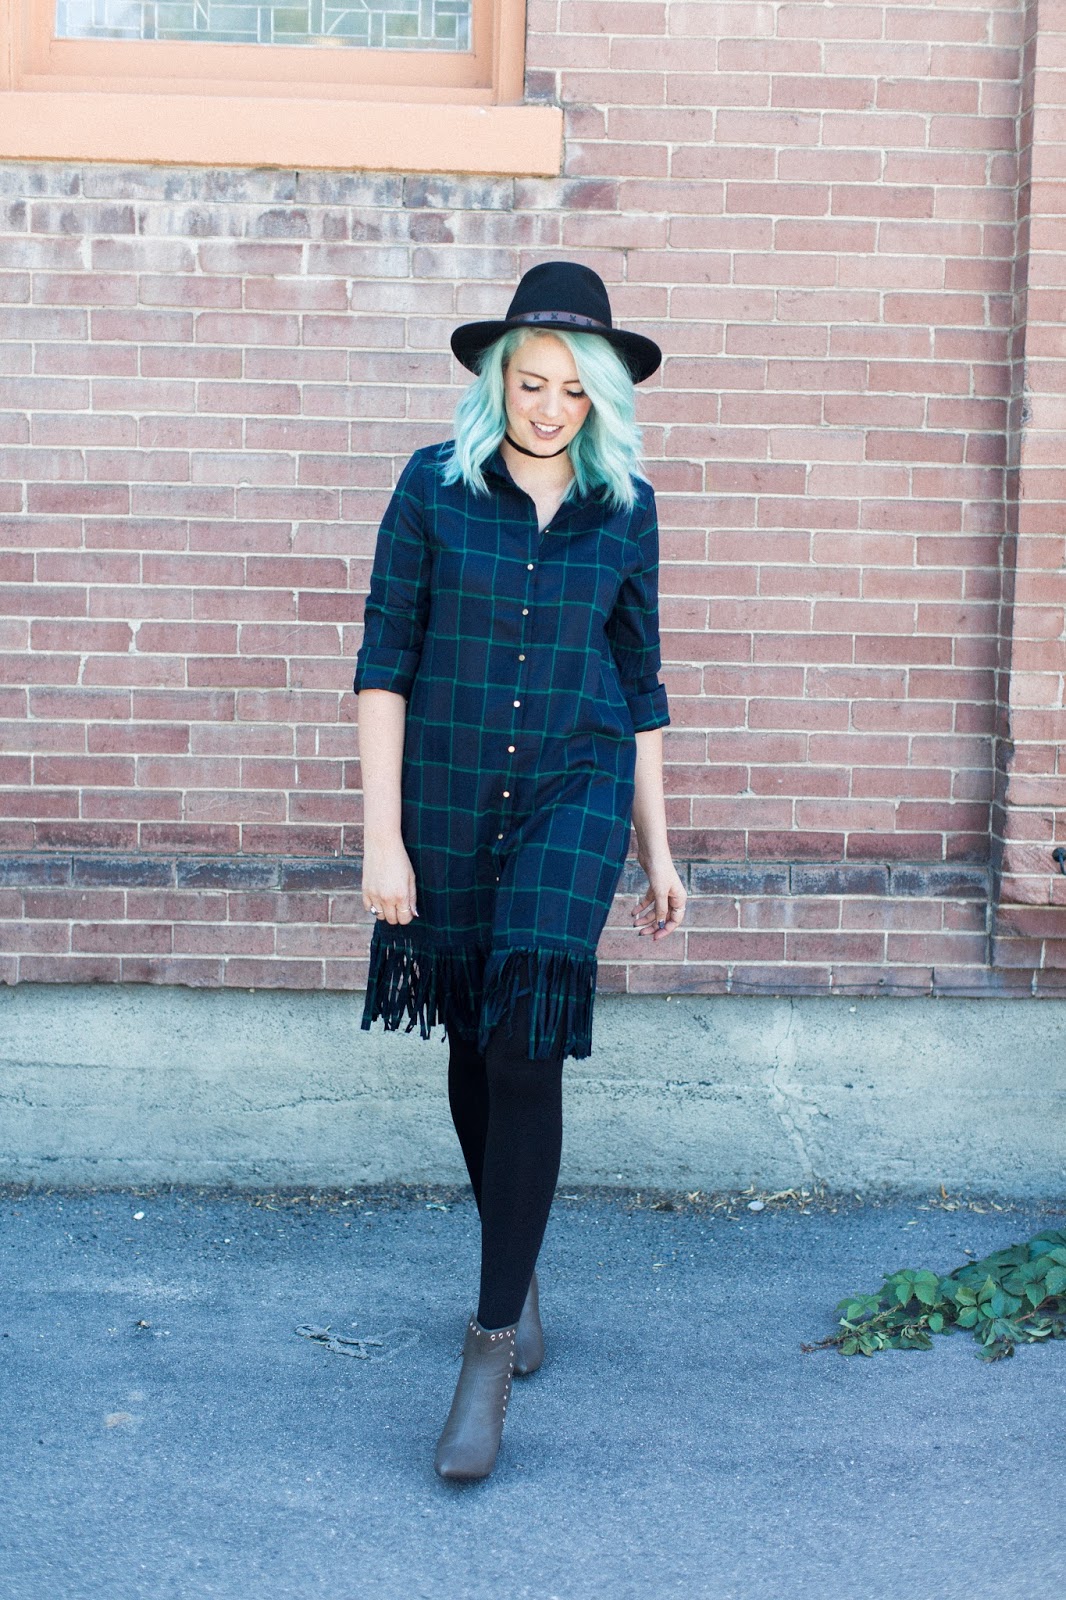 Blue hair, fringe and plaid, Utah Fashion blogger